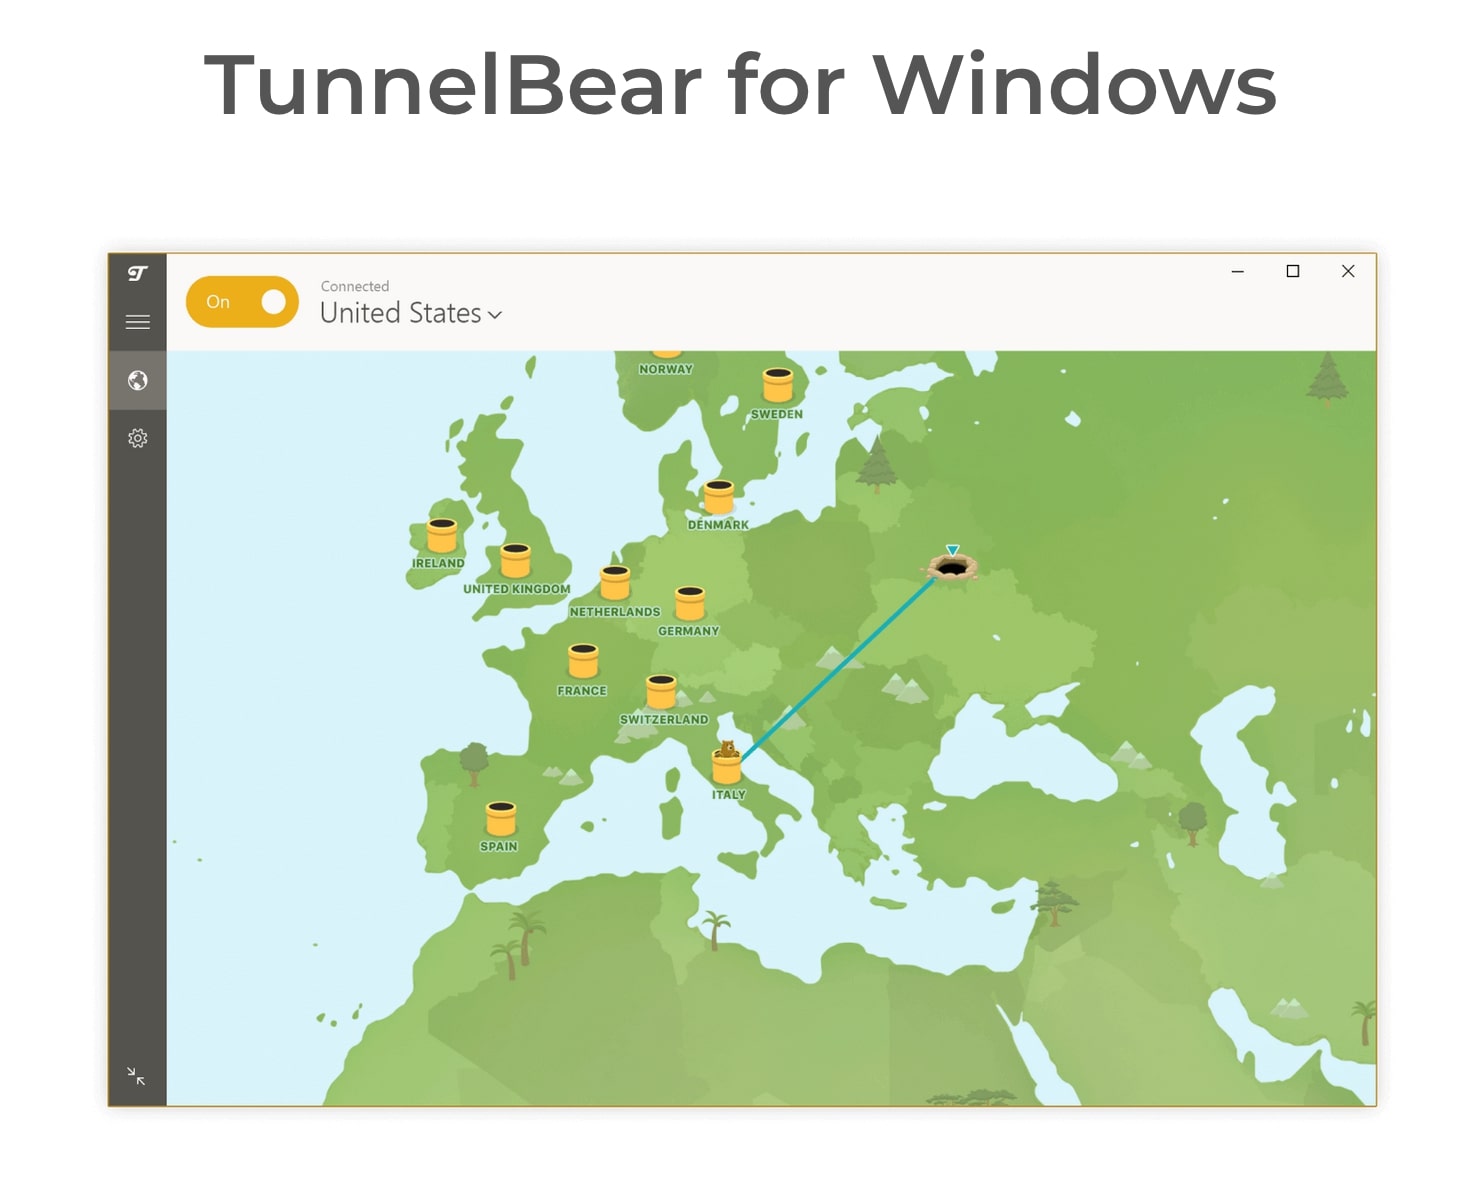 TunnelBear on a Windows computer